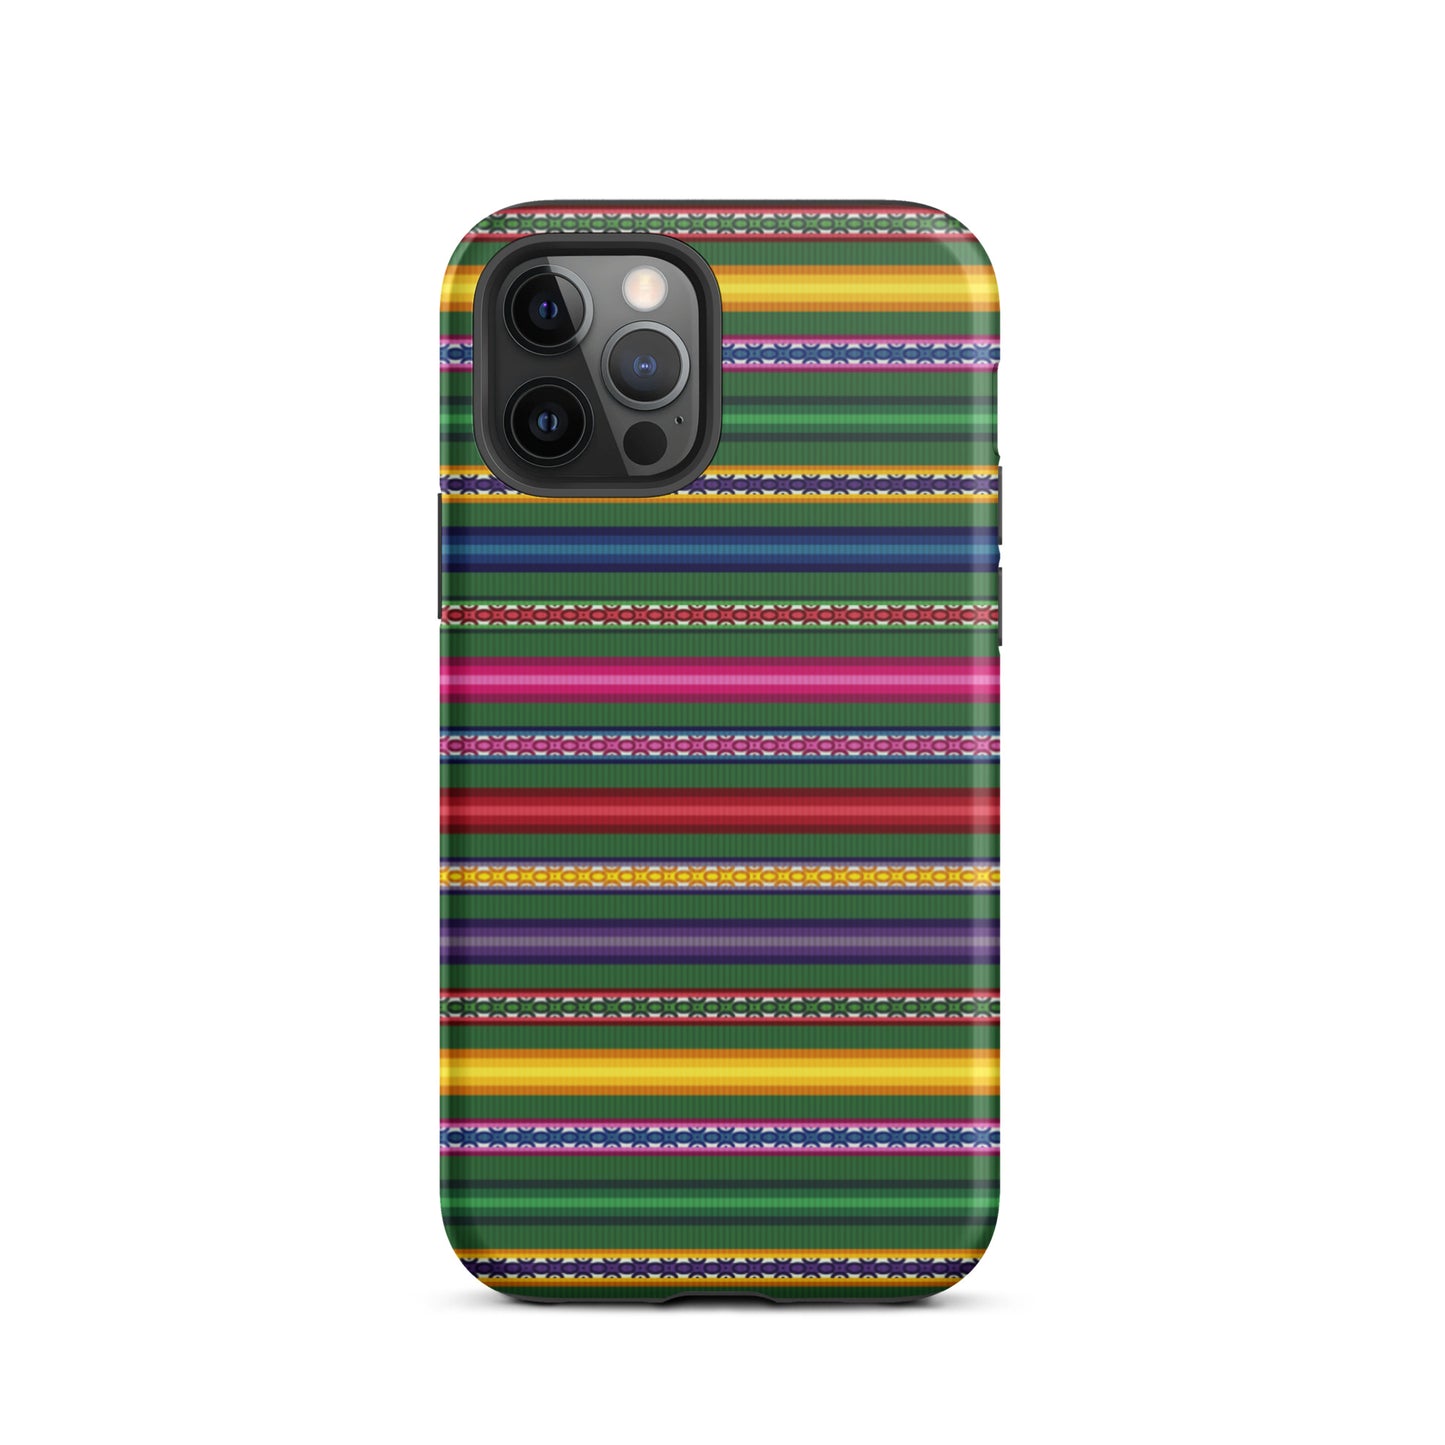 Peruvian Tough iPhone 12 Pro case